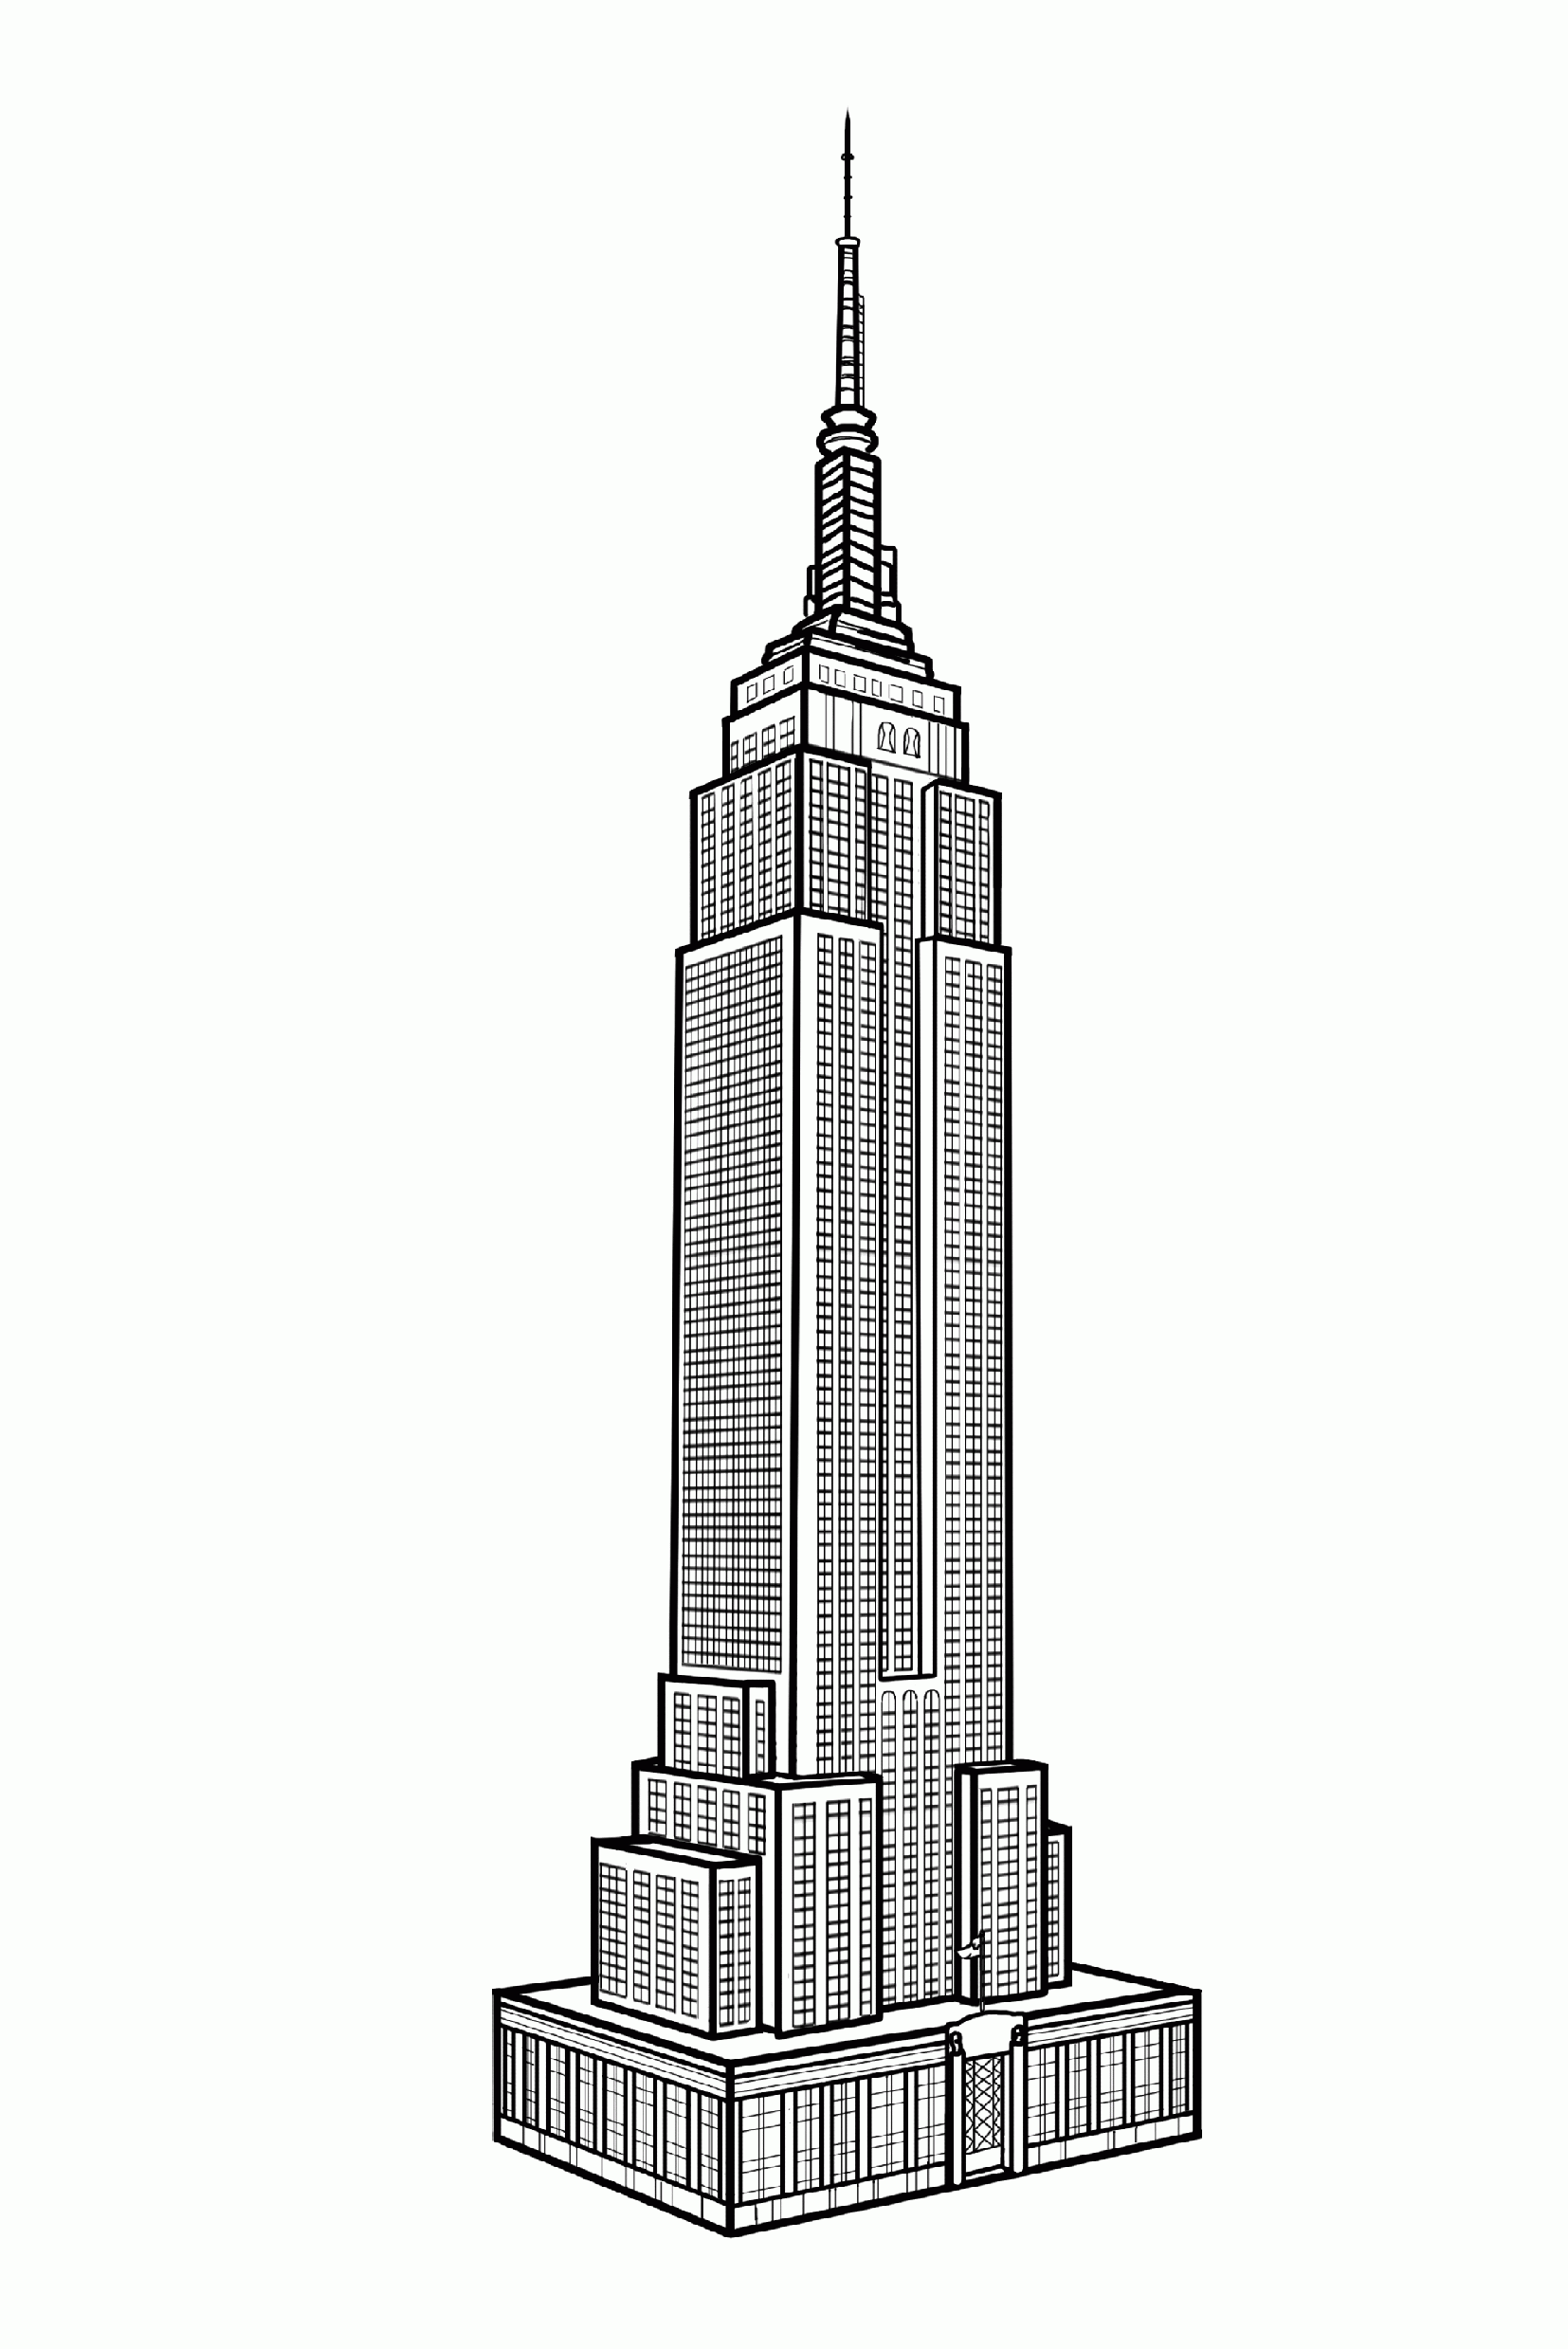 Coloriage pour adulte difficile de l'Empire State Building : des centaines de fenêtres à colorier, à vous de choisir entre réalisme, pop art ou psychédélisme !!